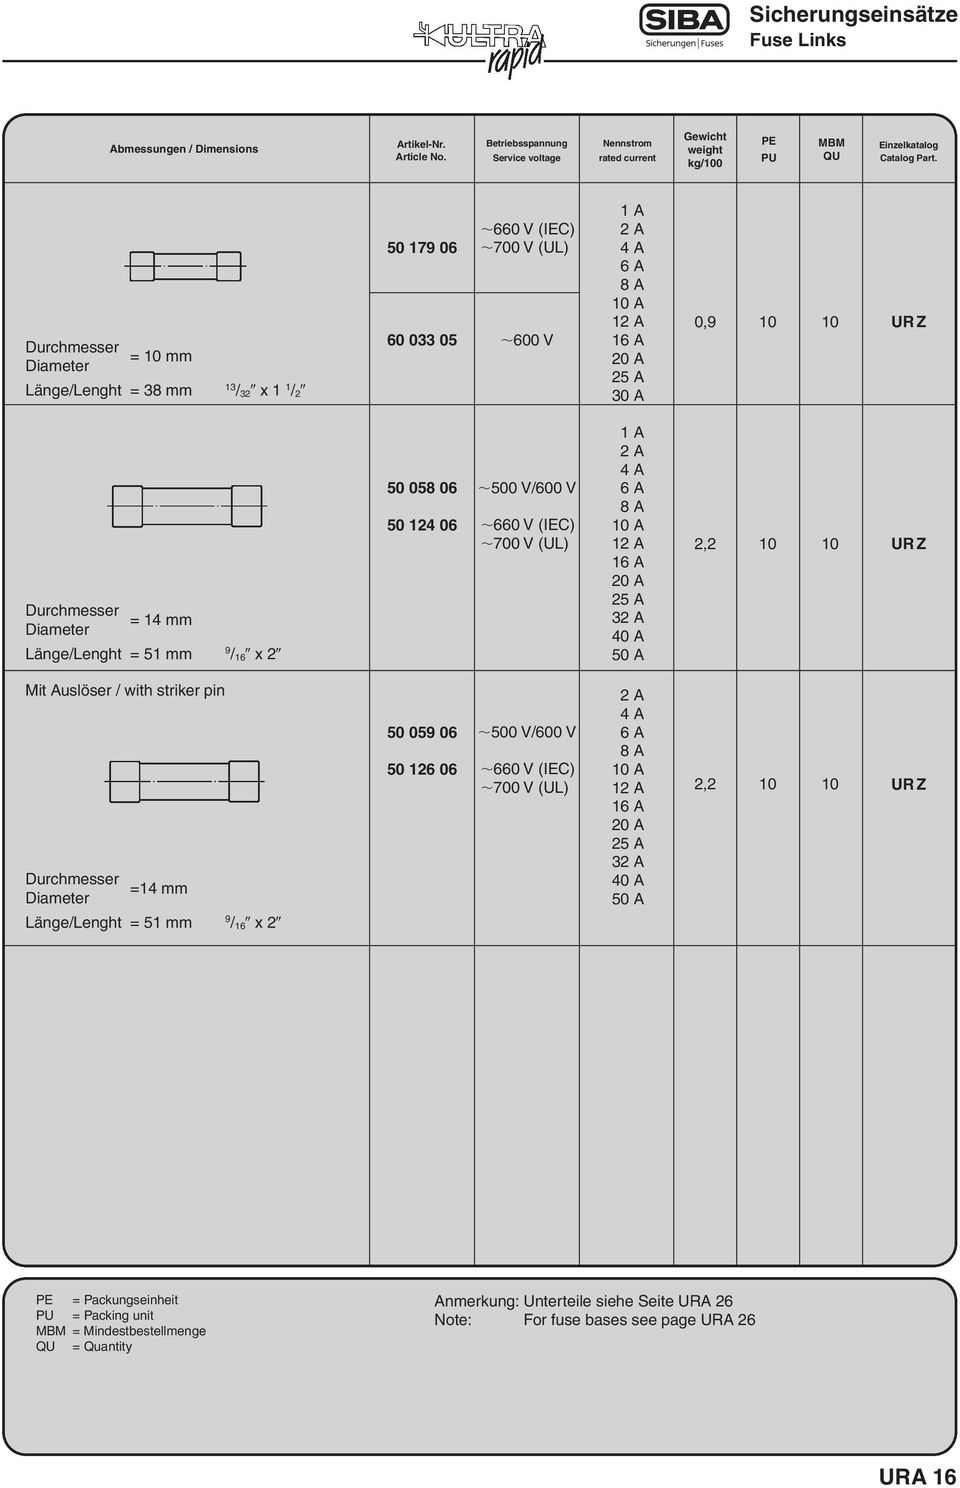 Diameter Länge/Lenght = 51 mm 9 / x 058 06 14 06 0 V/600 V 660 V (IEC) 700 V (UL) 1 A A 6 A A 1 A A 0 A A A A A, Mit Auslöser / with striker pin Durchmesser